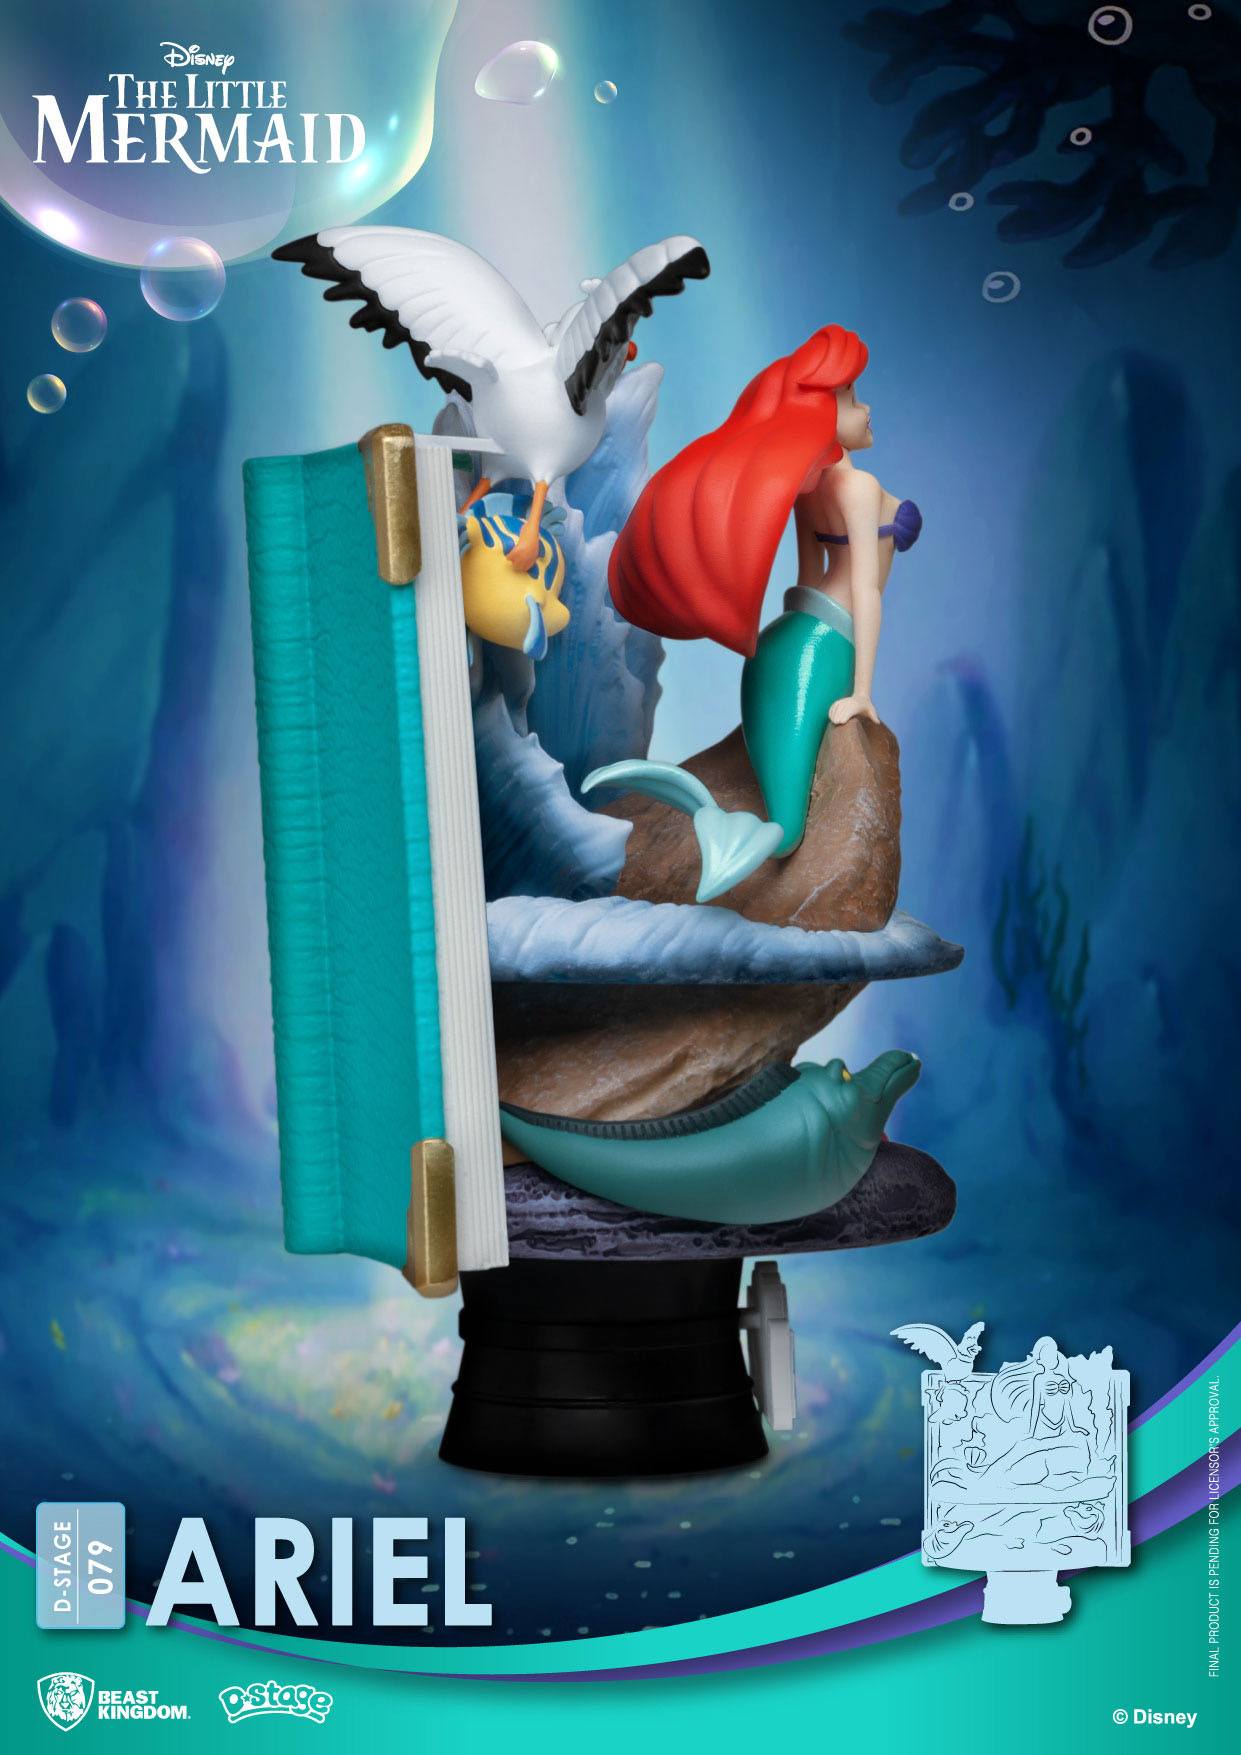 Diorama D-scena serija knjiga priča Ariel